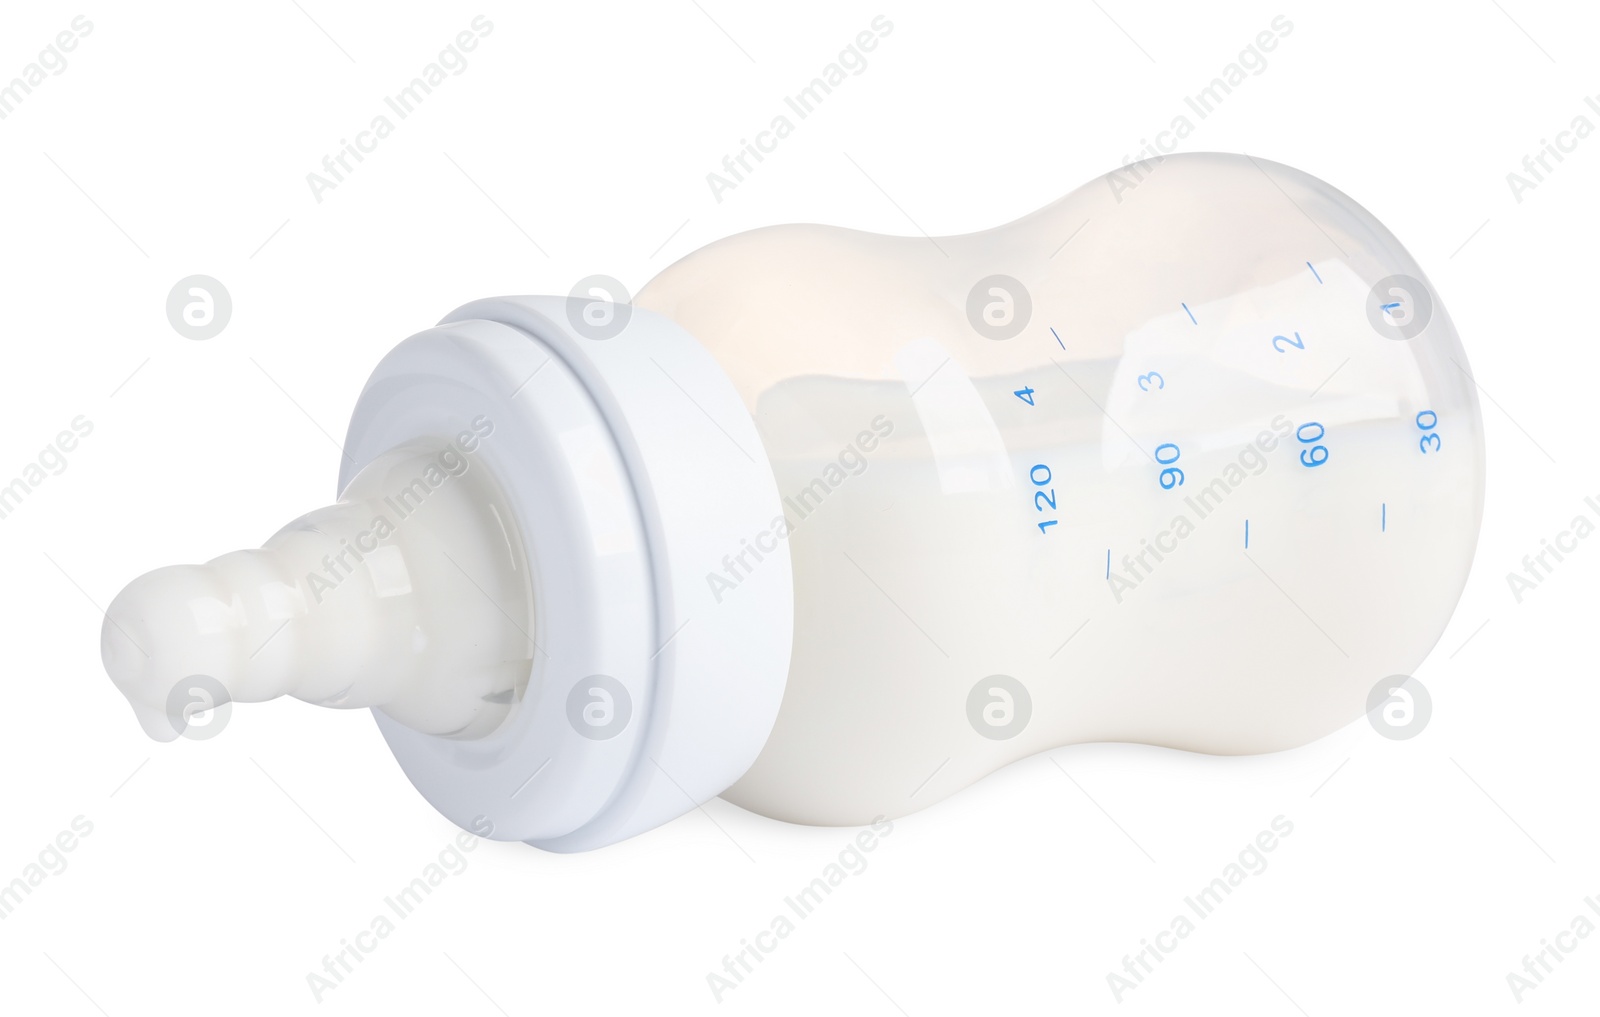 Photo of Feeding bottle with dairy free infant formula on white background, closeup